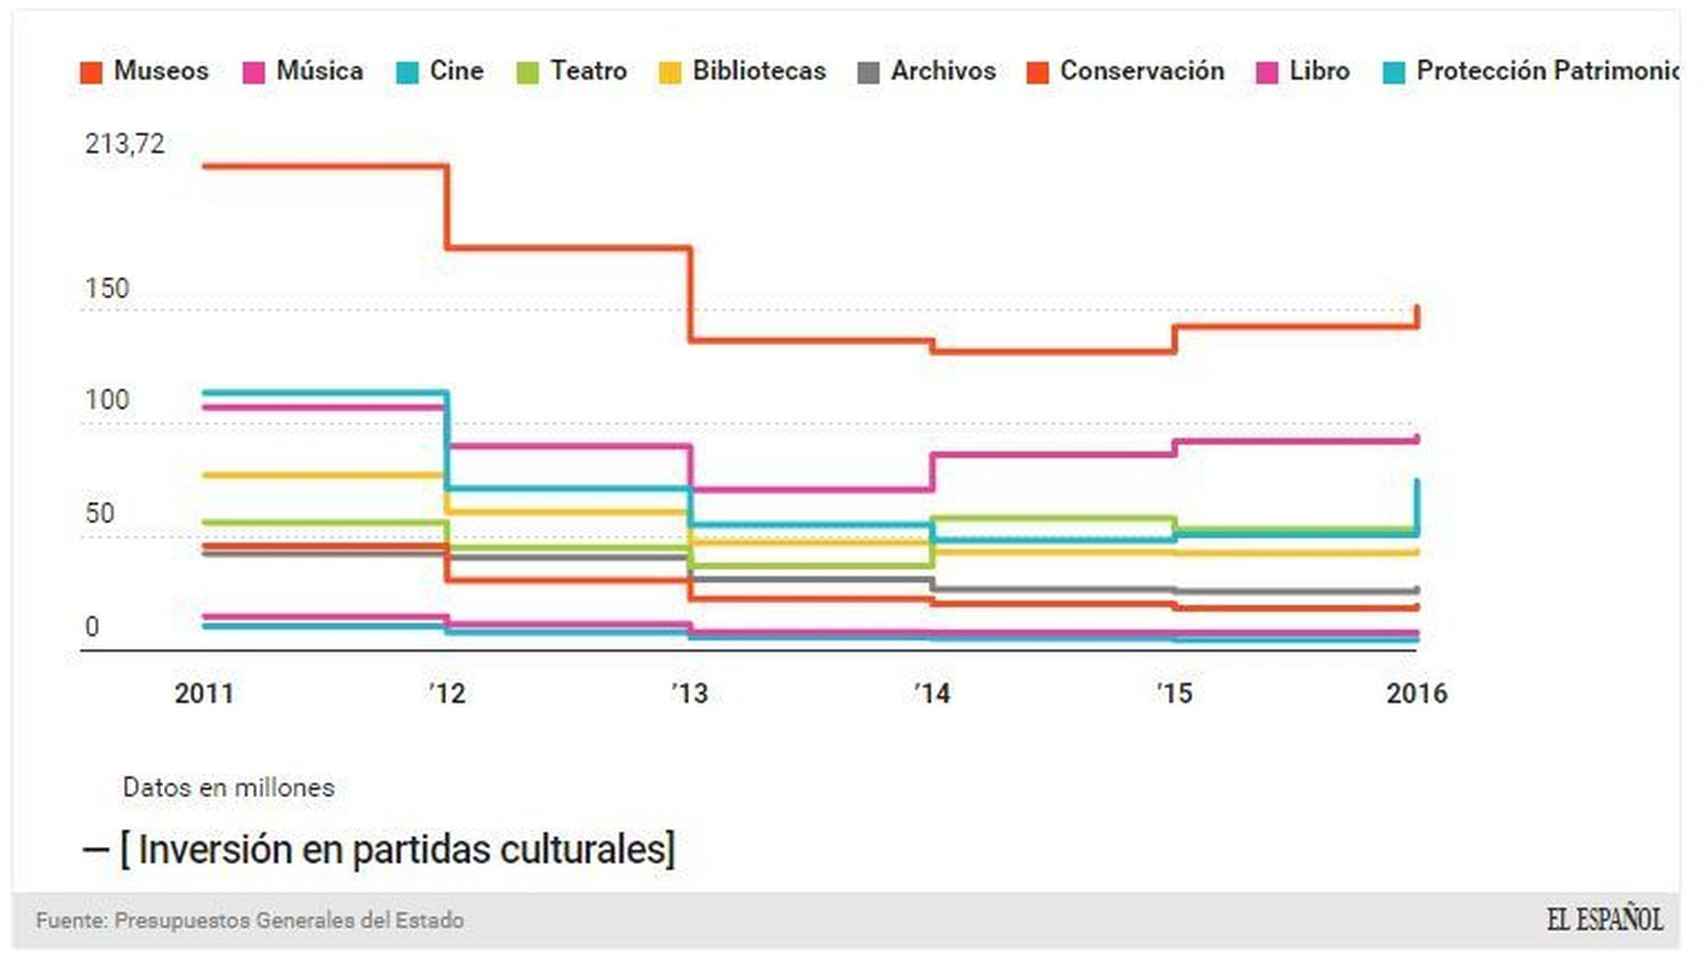 Evolución de la inversión en las partidas culturales, desde 2011 hasta 2016.